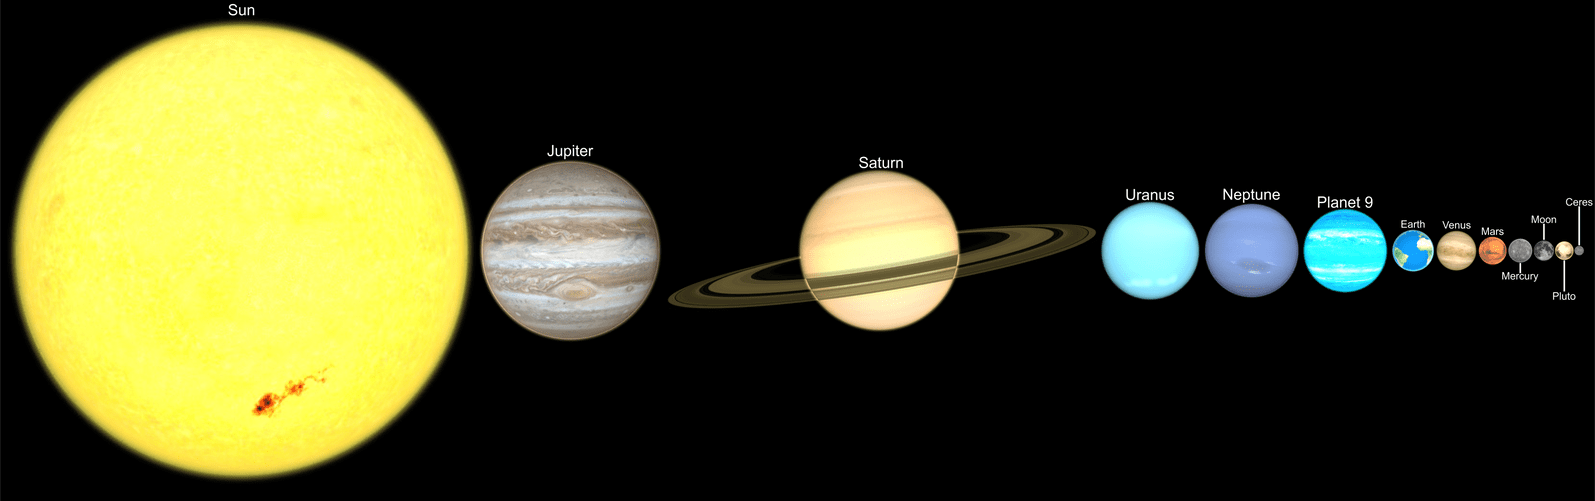 Solar System Size Comparison 3D